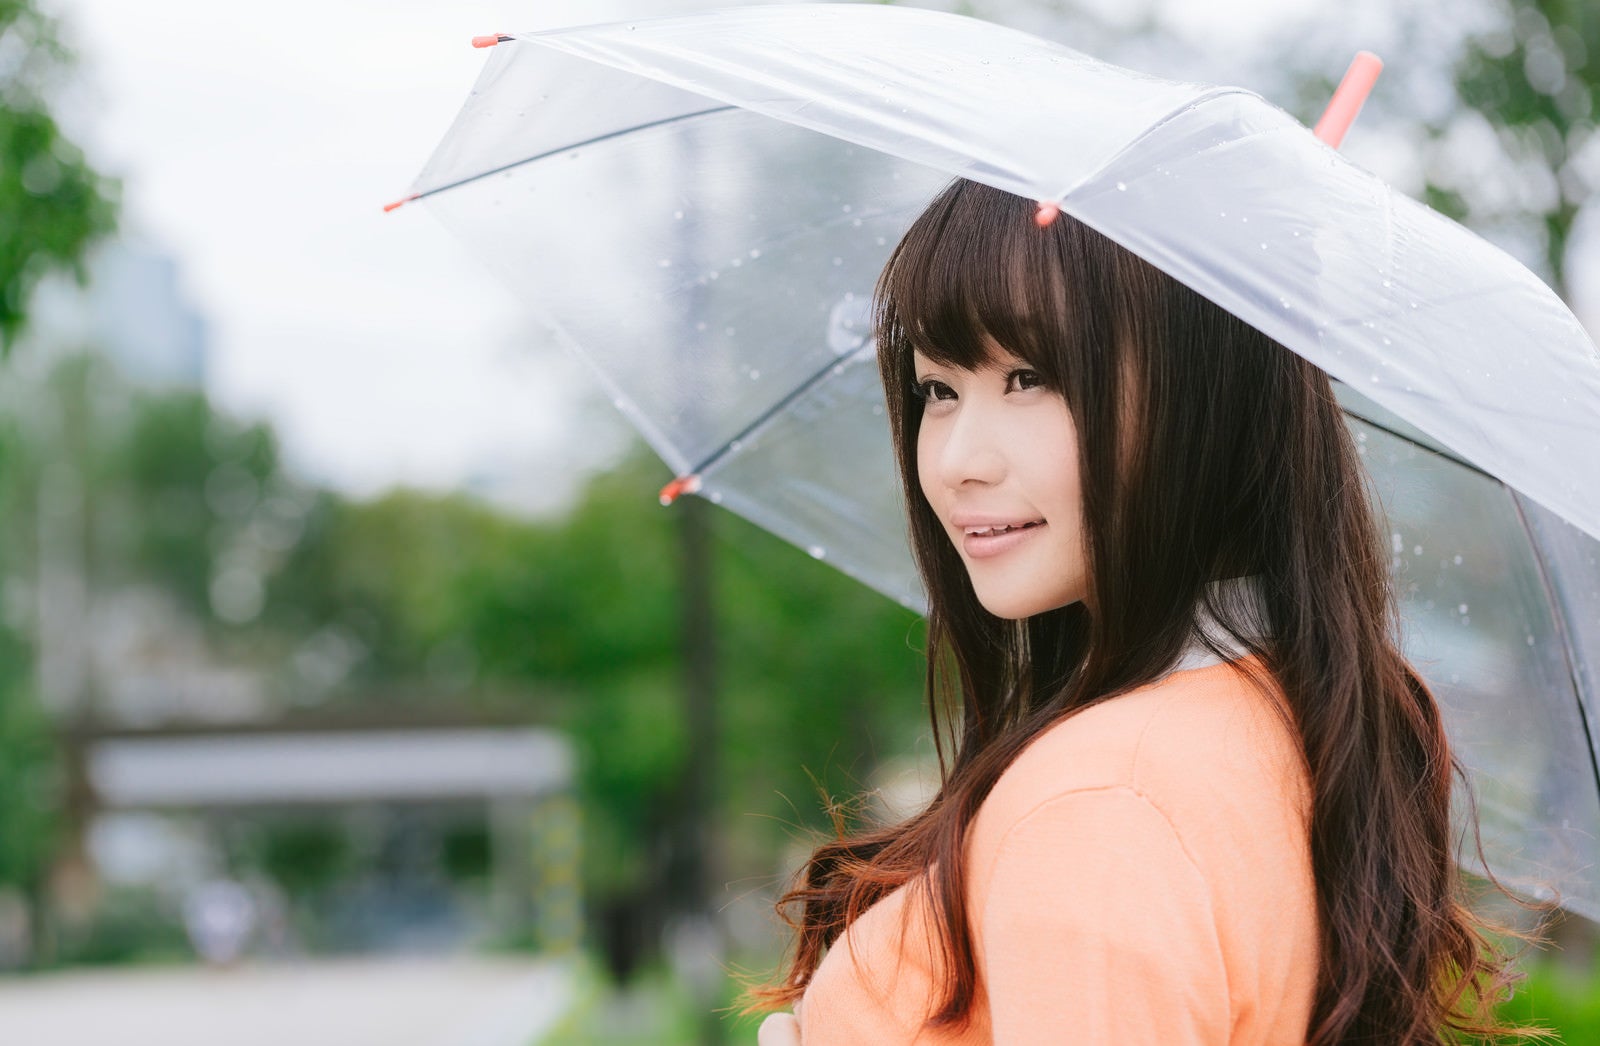 「雨の日と傘と美女」の写真